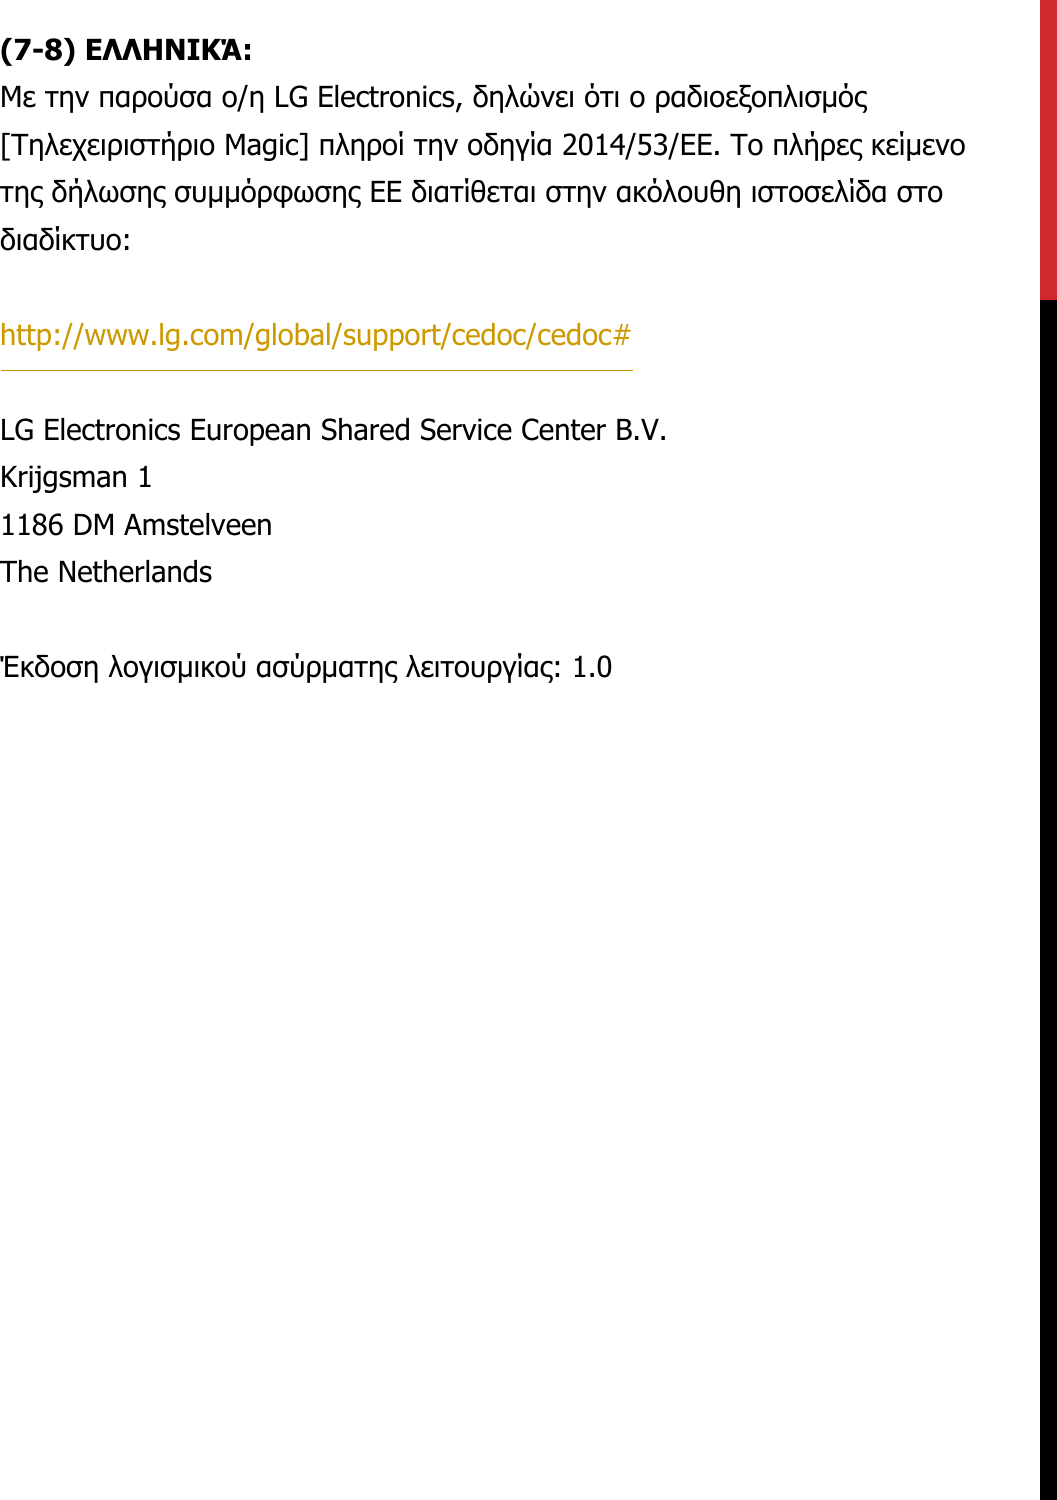 (7-8) ΕΛΛΗΝΙΚΆ:Με την παρούσα ο/η LG Electronics, δηλώνει ότι ο ραδιοεξοπλισμός [Τηλεχειριστήριο Magic] πληροί την οδηγία 2014/53/ΕΕ. Το πλήρες κείμενο της δήλωσης συμμόρφωσης ΕΕ διατίθεται στην ακόλουθη ιστοσελίδα στο διαδίκτυο:   http://www.lg.com/global/support/cedoc/cedoc#   LG Electronics European Shared Service Center B.V.  Krijgsman 1  1186 DM Amstelveen  The Netherlands   Έκδοση λογισμικού ασύρματης λειτουργίας: 1.0